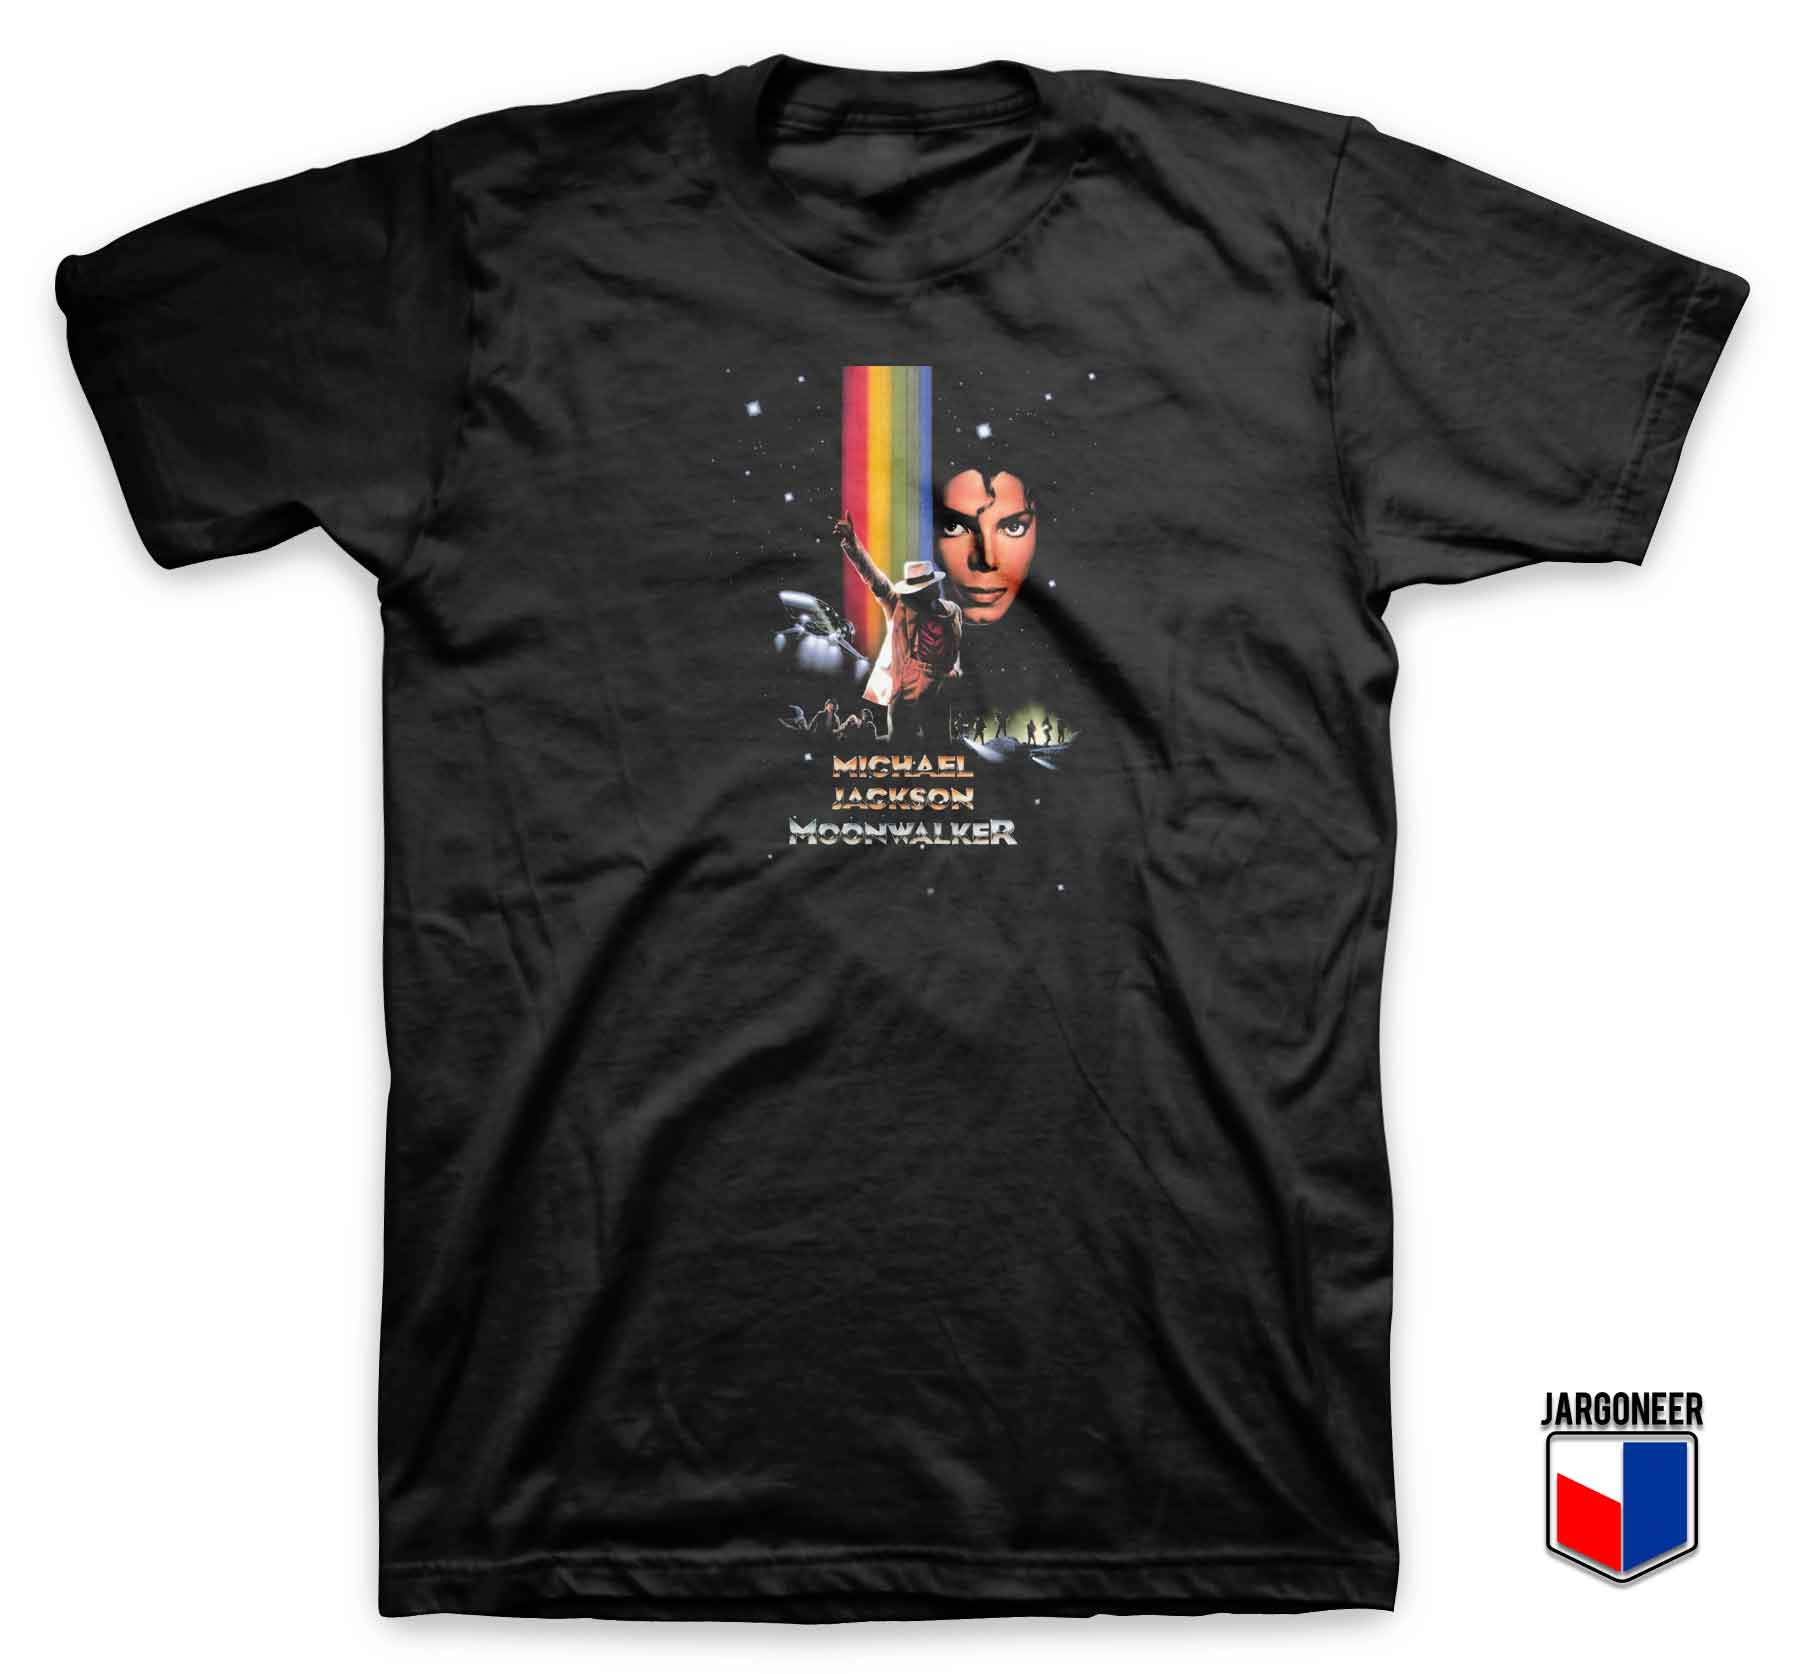 Michael Jackson Moonwalker - Shop Unique Graphic Cool Shirt Designs